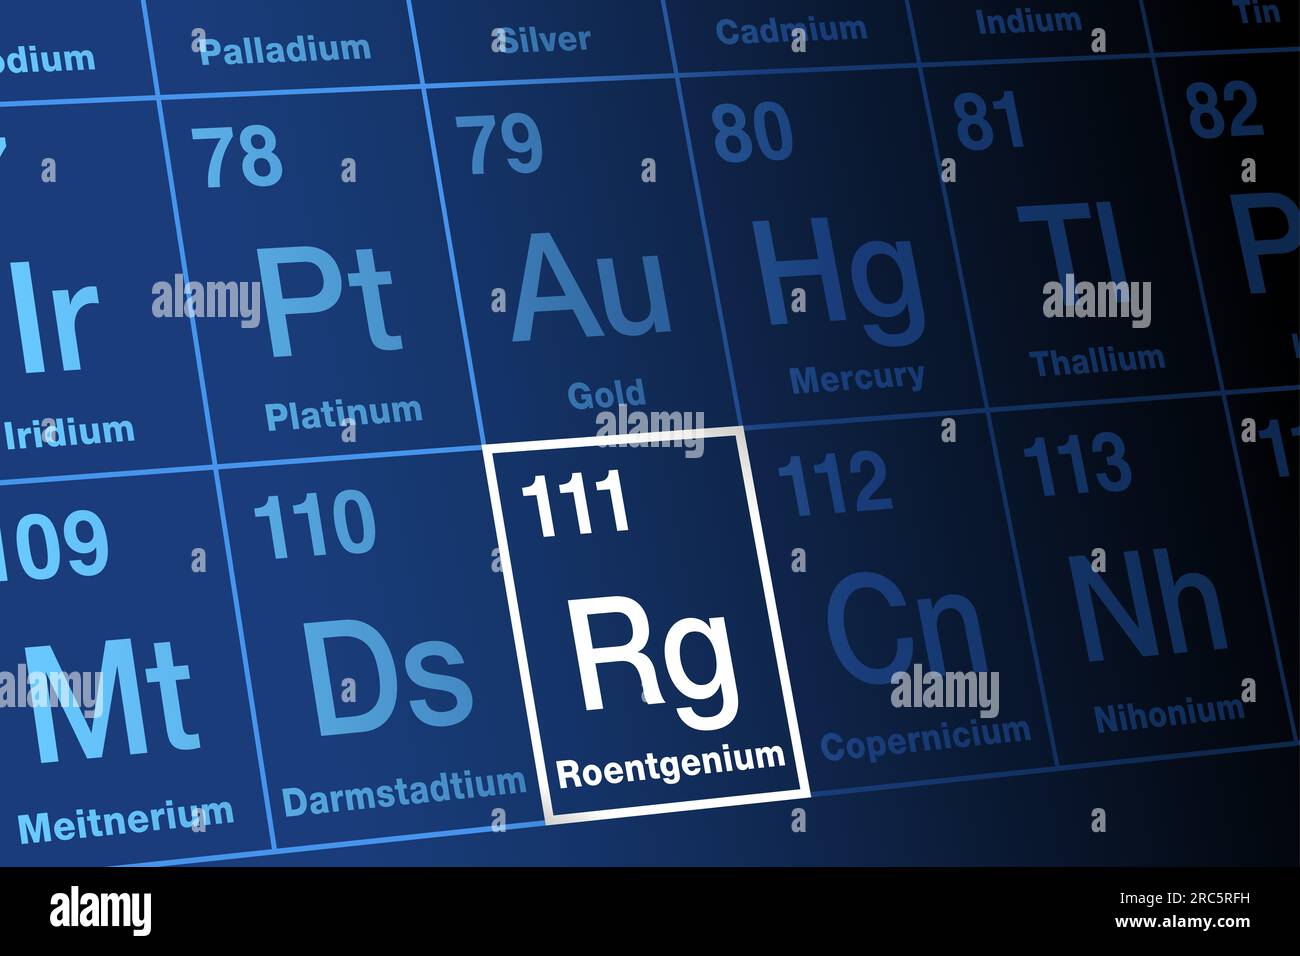 Roentgenium sur le tableau périodique des éléments. Elément transactinide synthétique extrêmement radioactif, superlourd, avec le symbole d'élément Rg. Banque D'Images